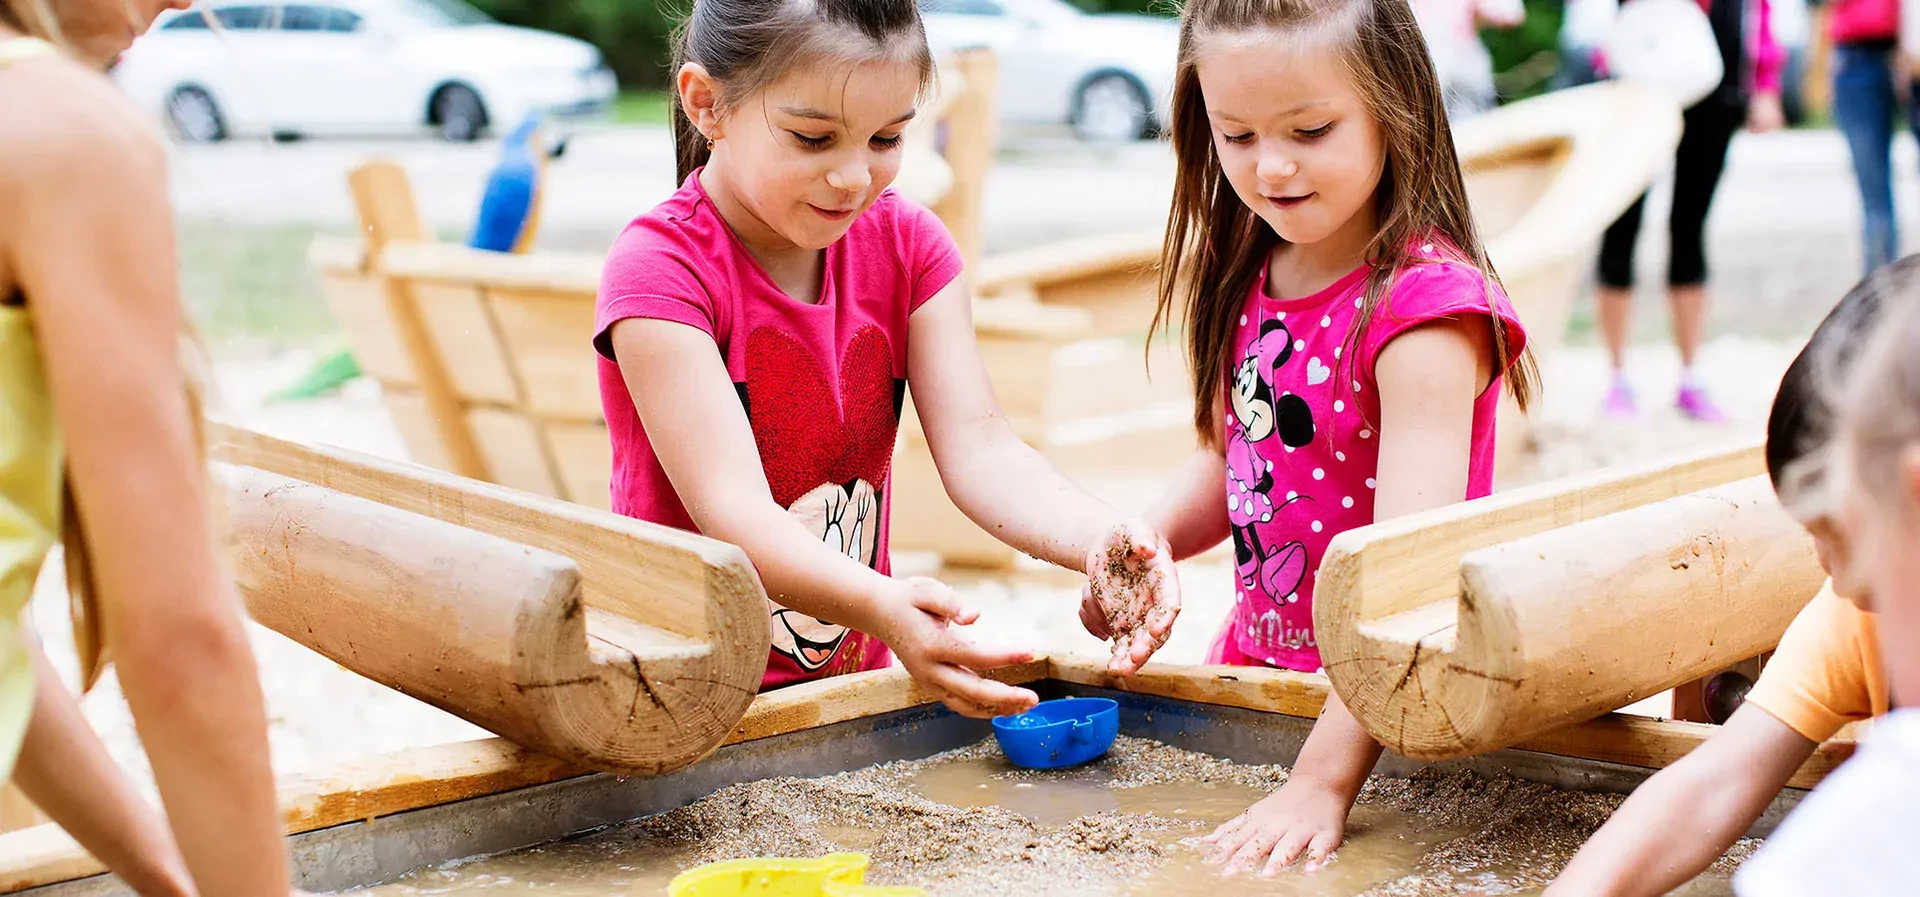 Play natural. Игры с песком для детей. Игры с песком детская площадка. Песочница компан. Детская площадка песок и вода.